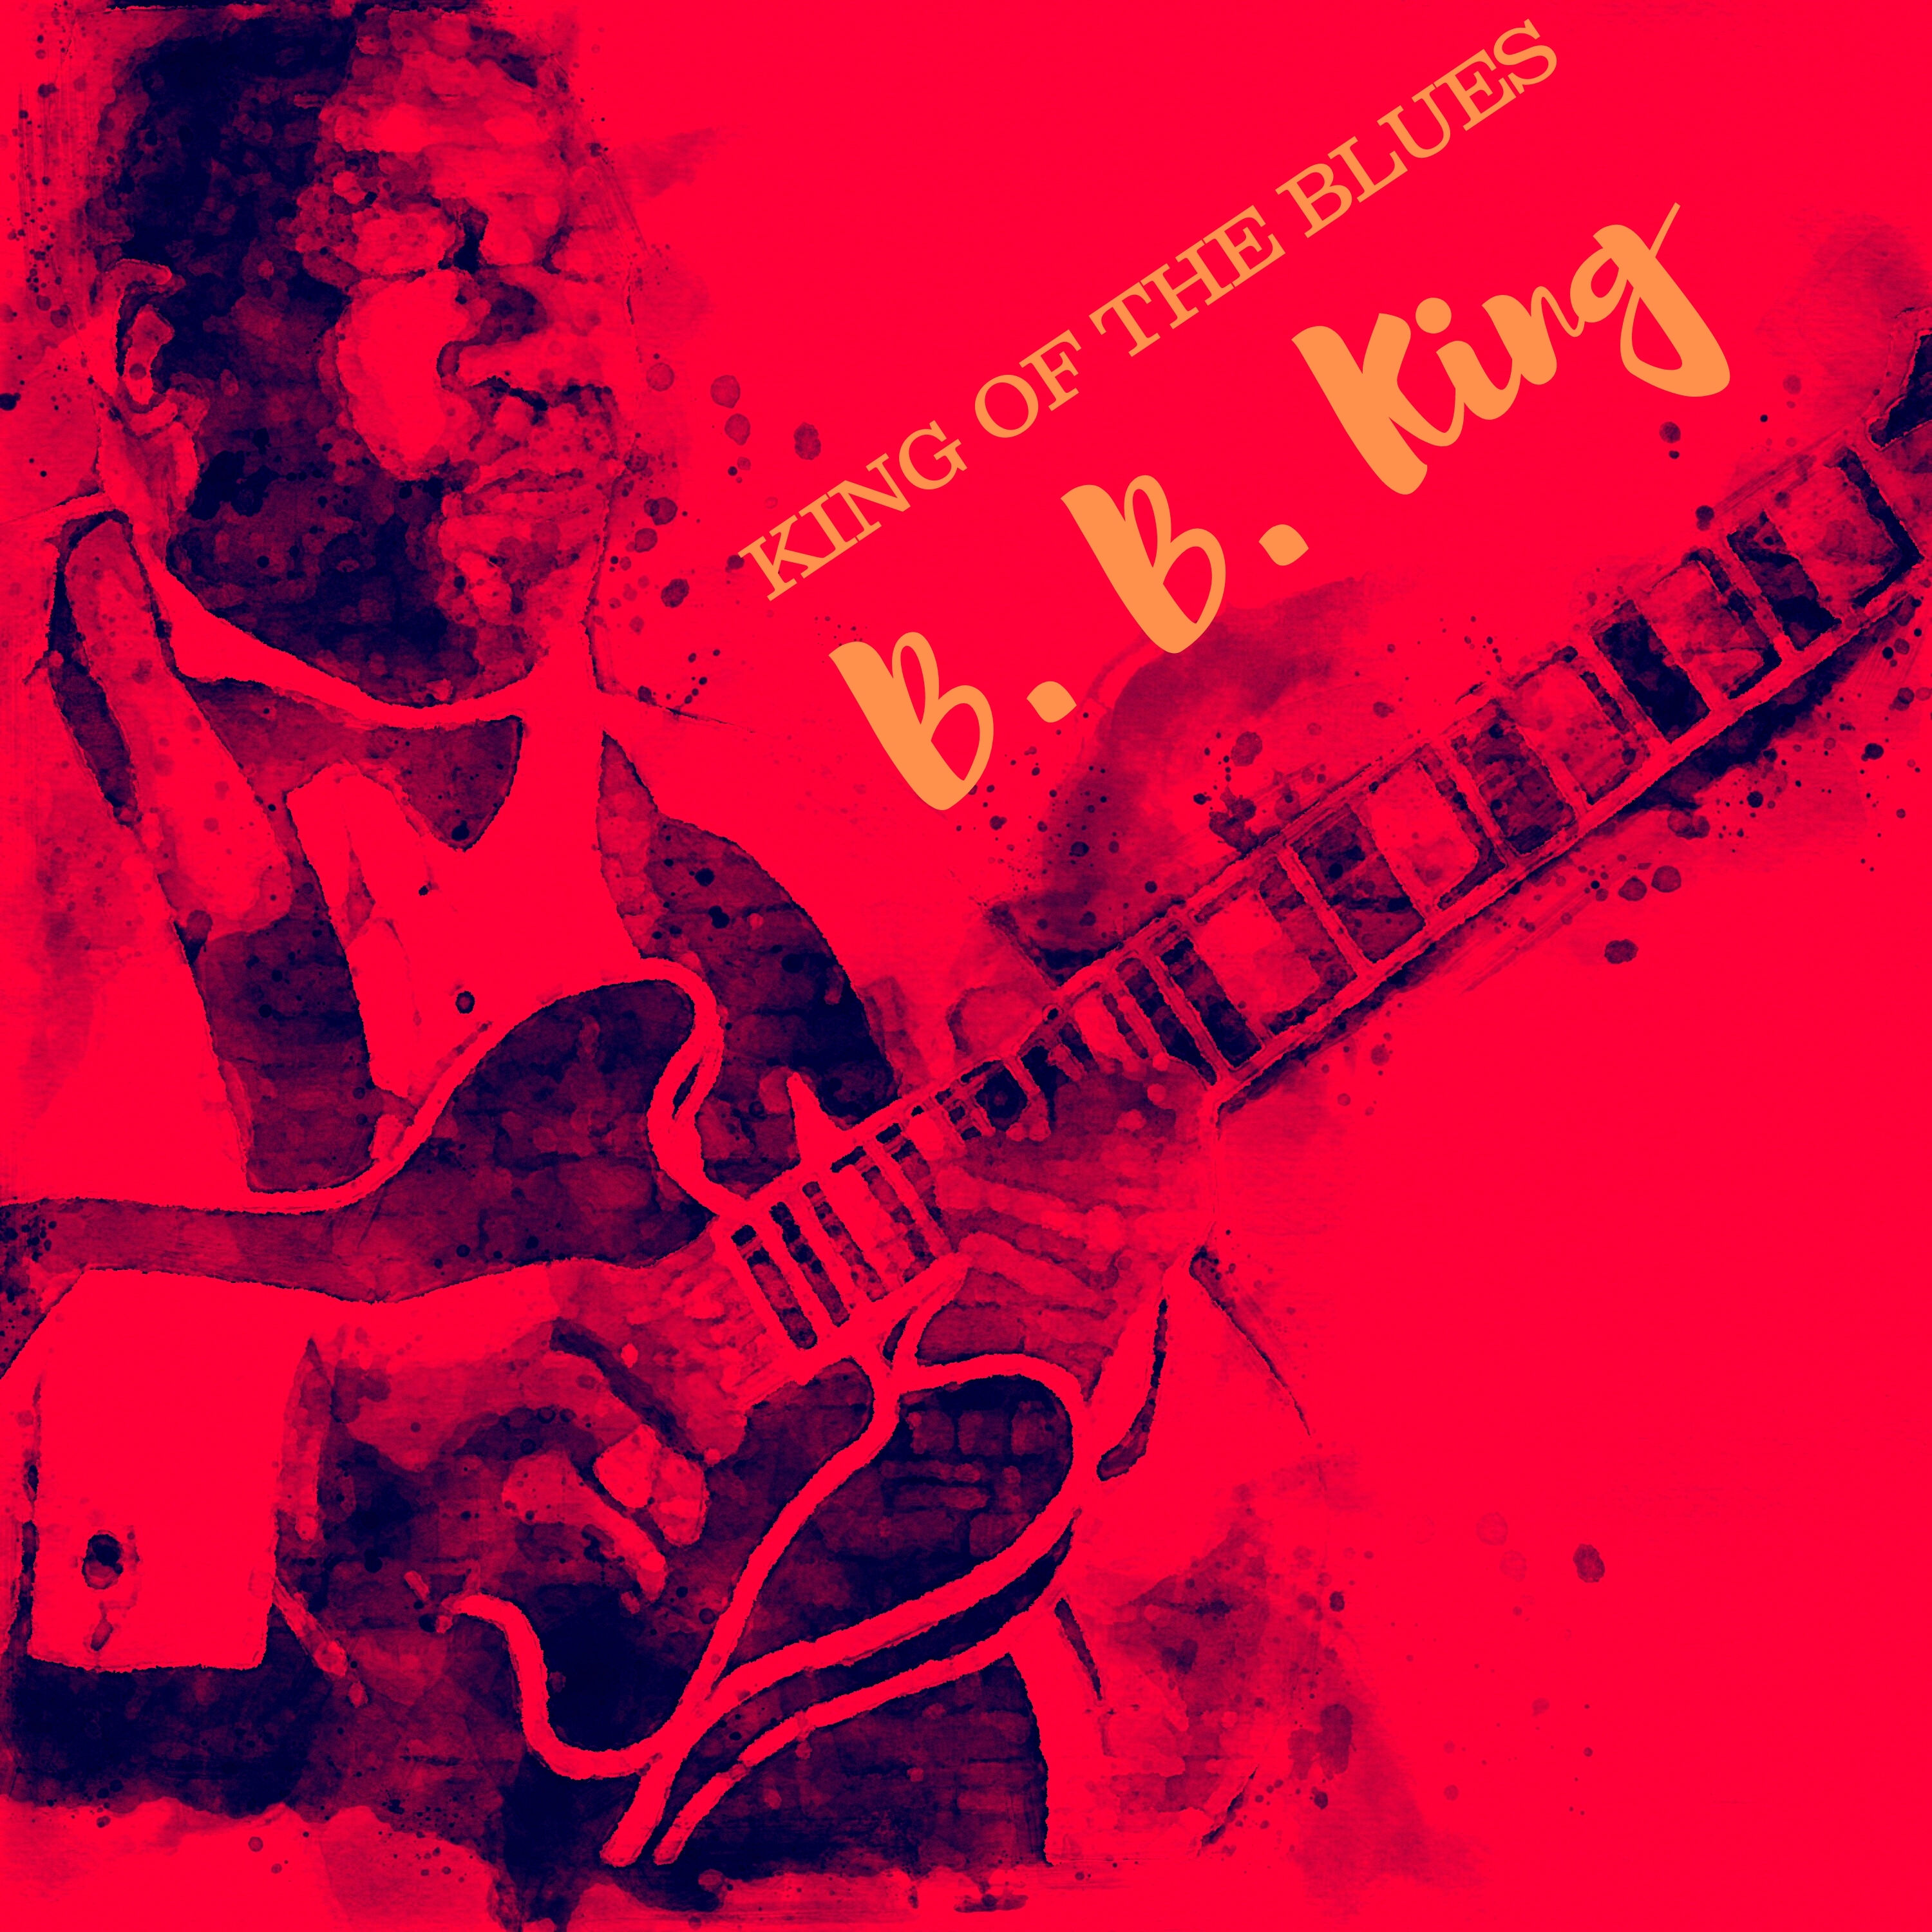 B.B. King - King of the Blues (1960/2021)[FLAC 24bit/48kHz]